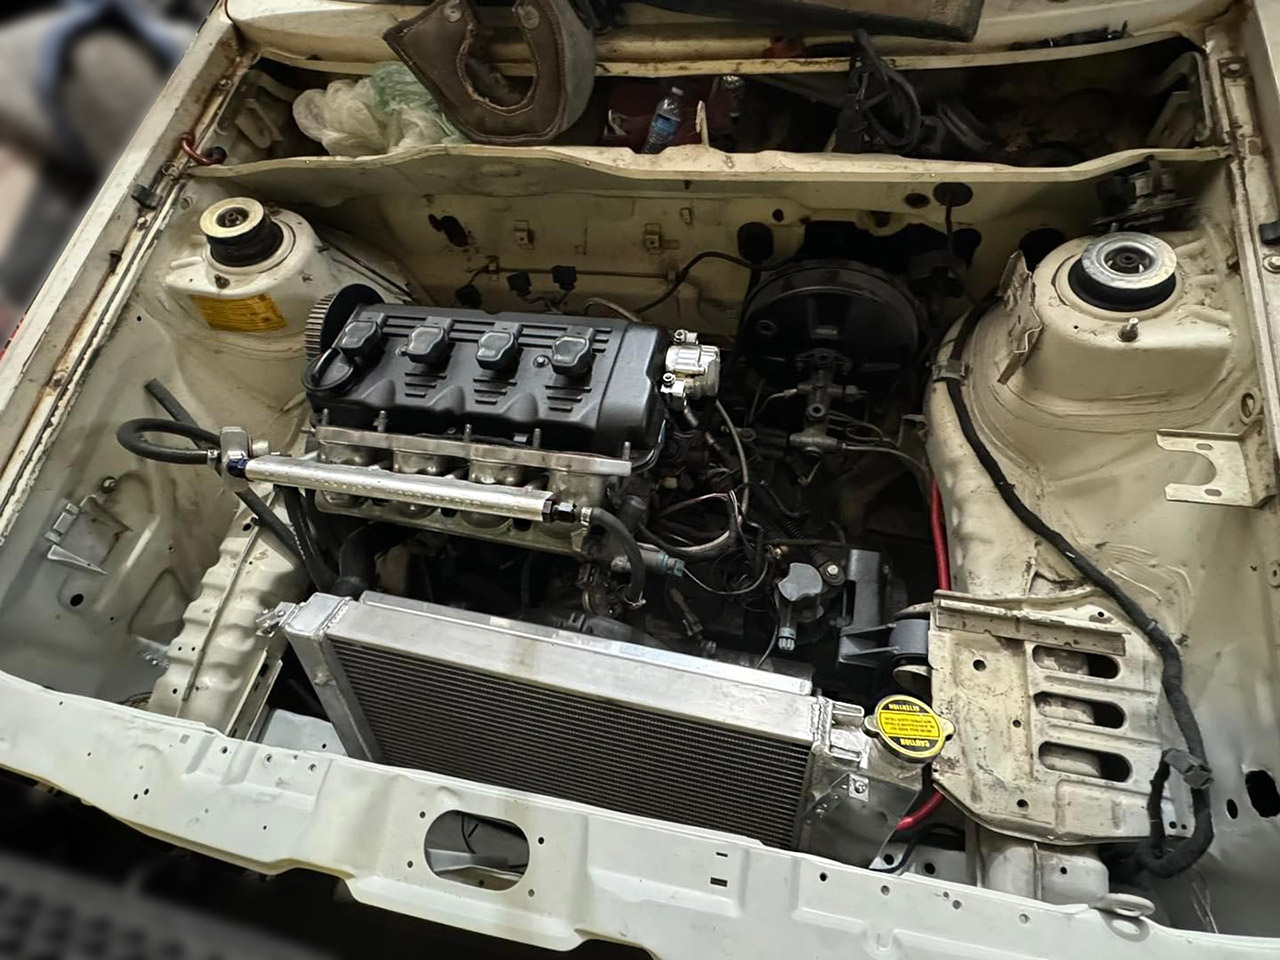 VW 16v engine + USRT Bosch cam trigger